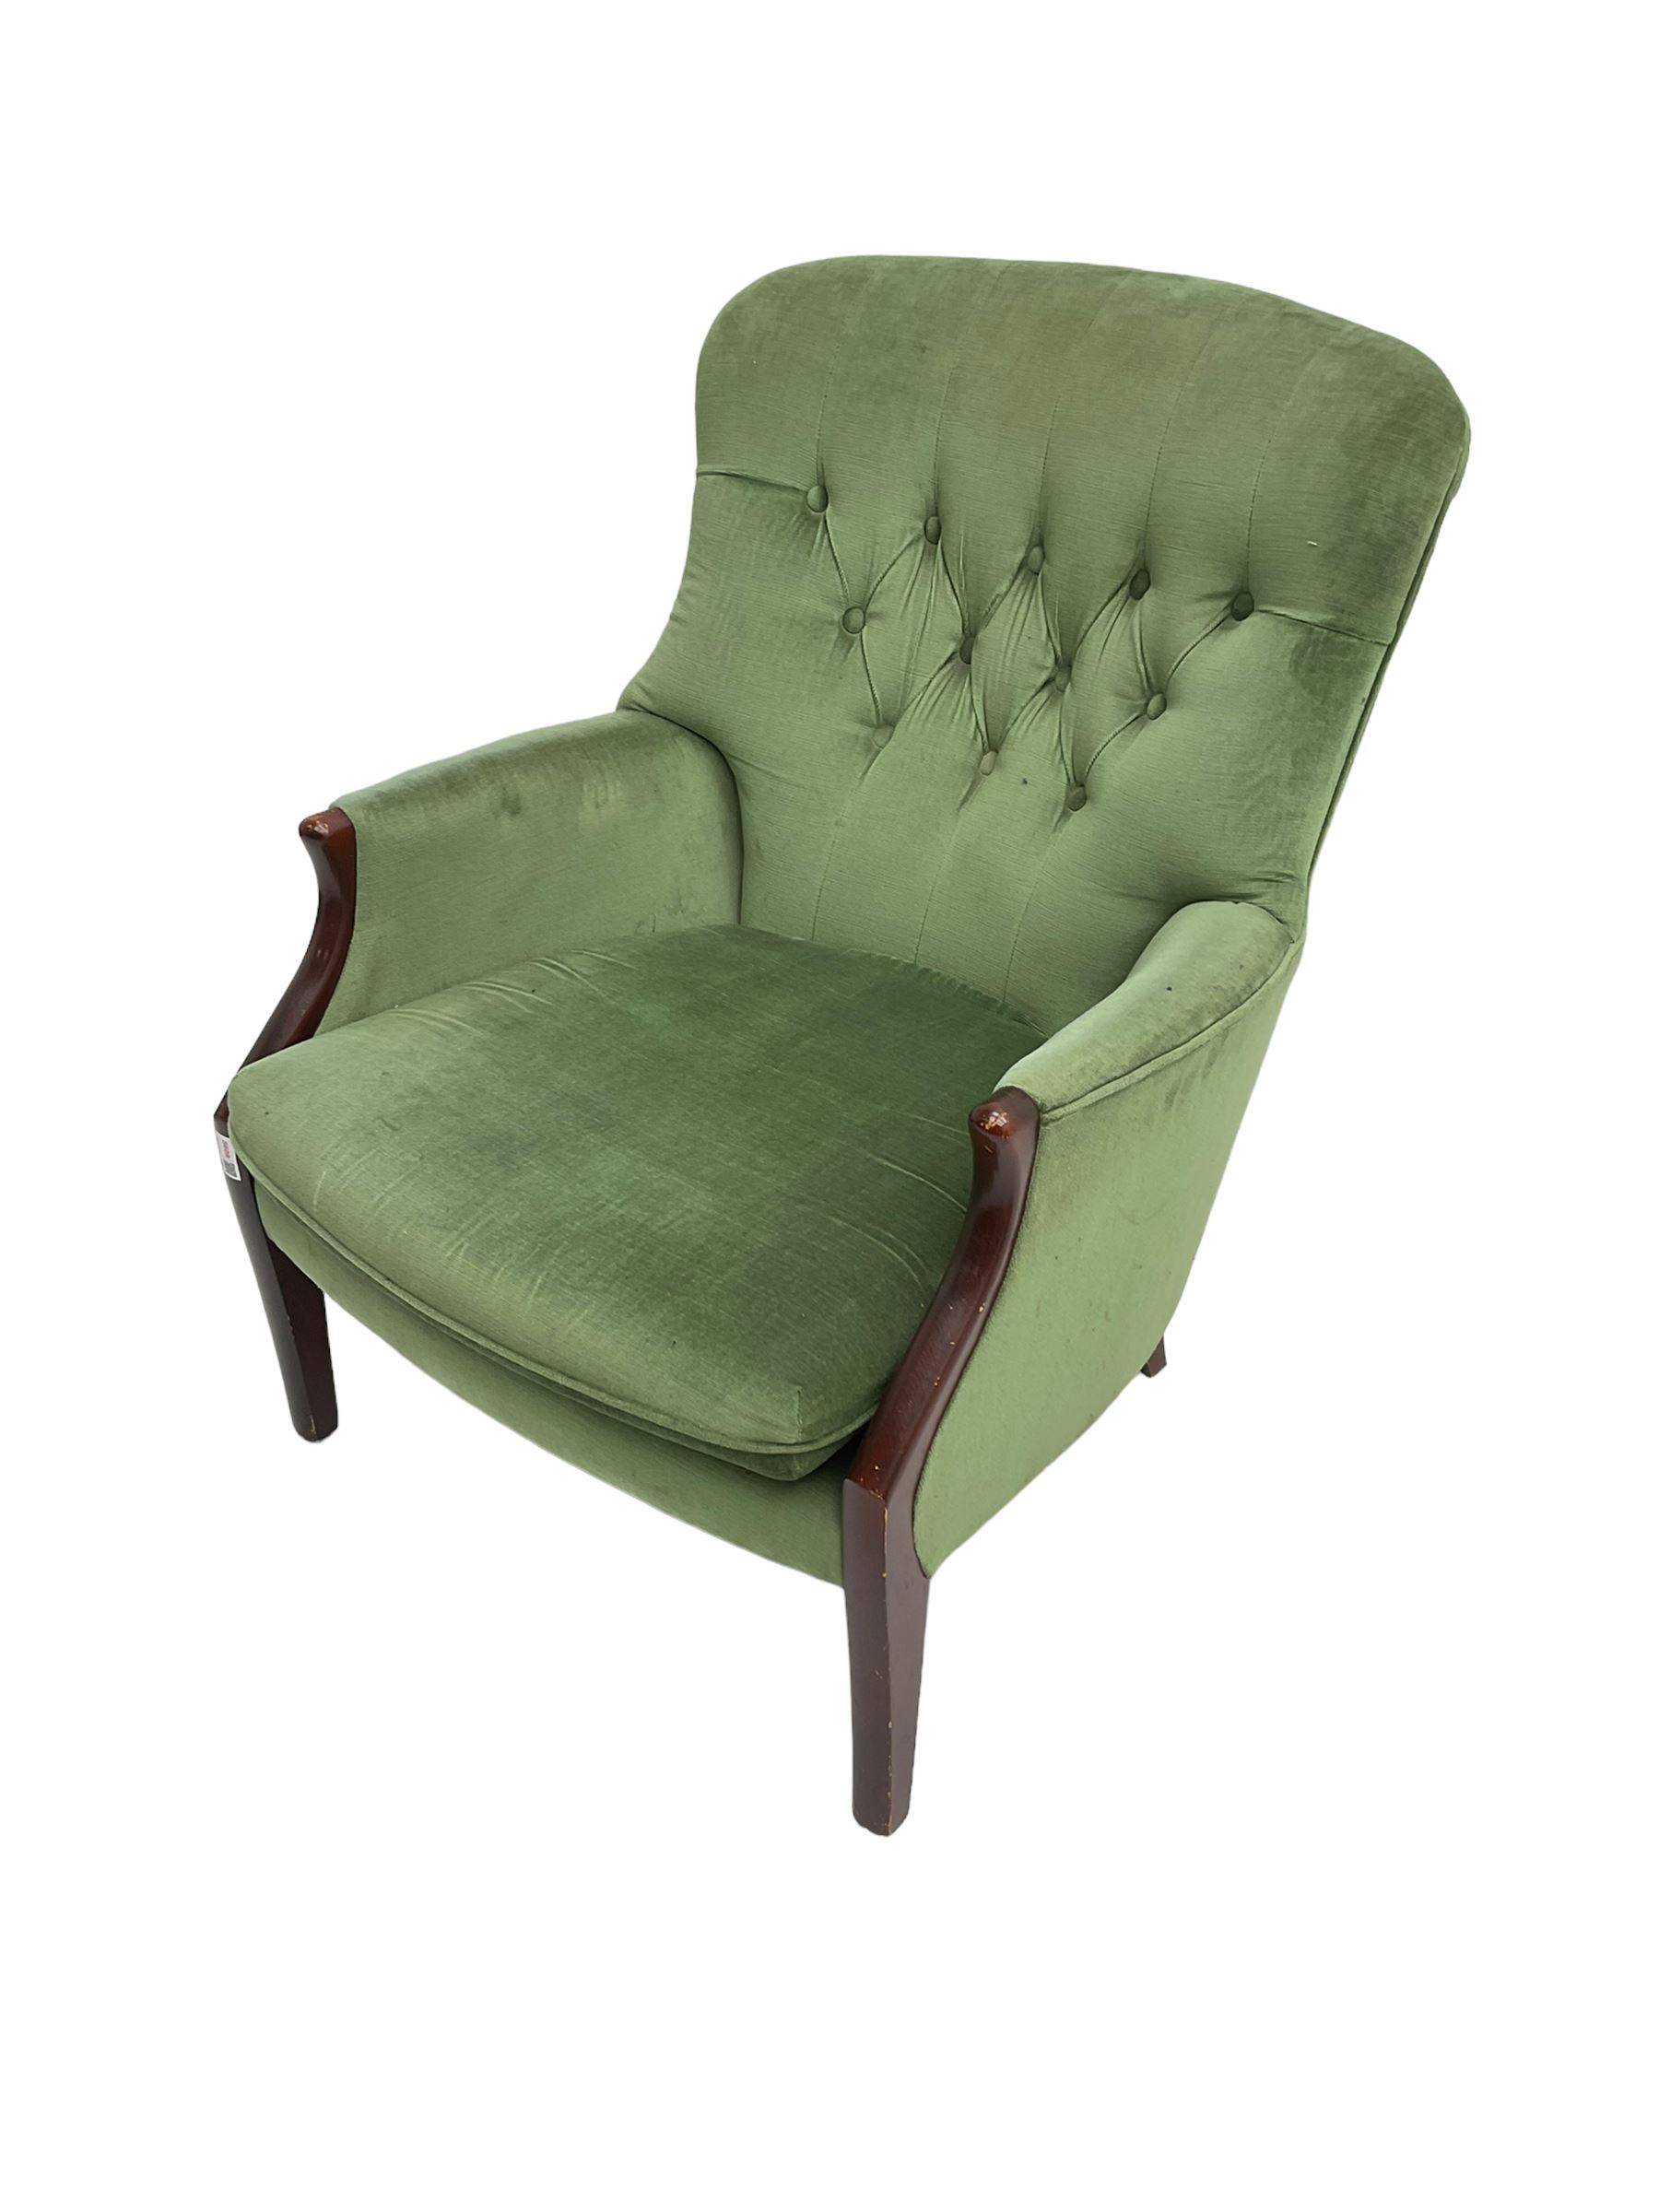 Parker Knoll - hardwood framed armchair - Image 3 of 6